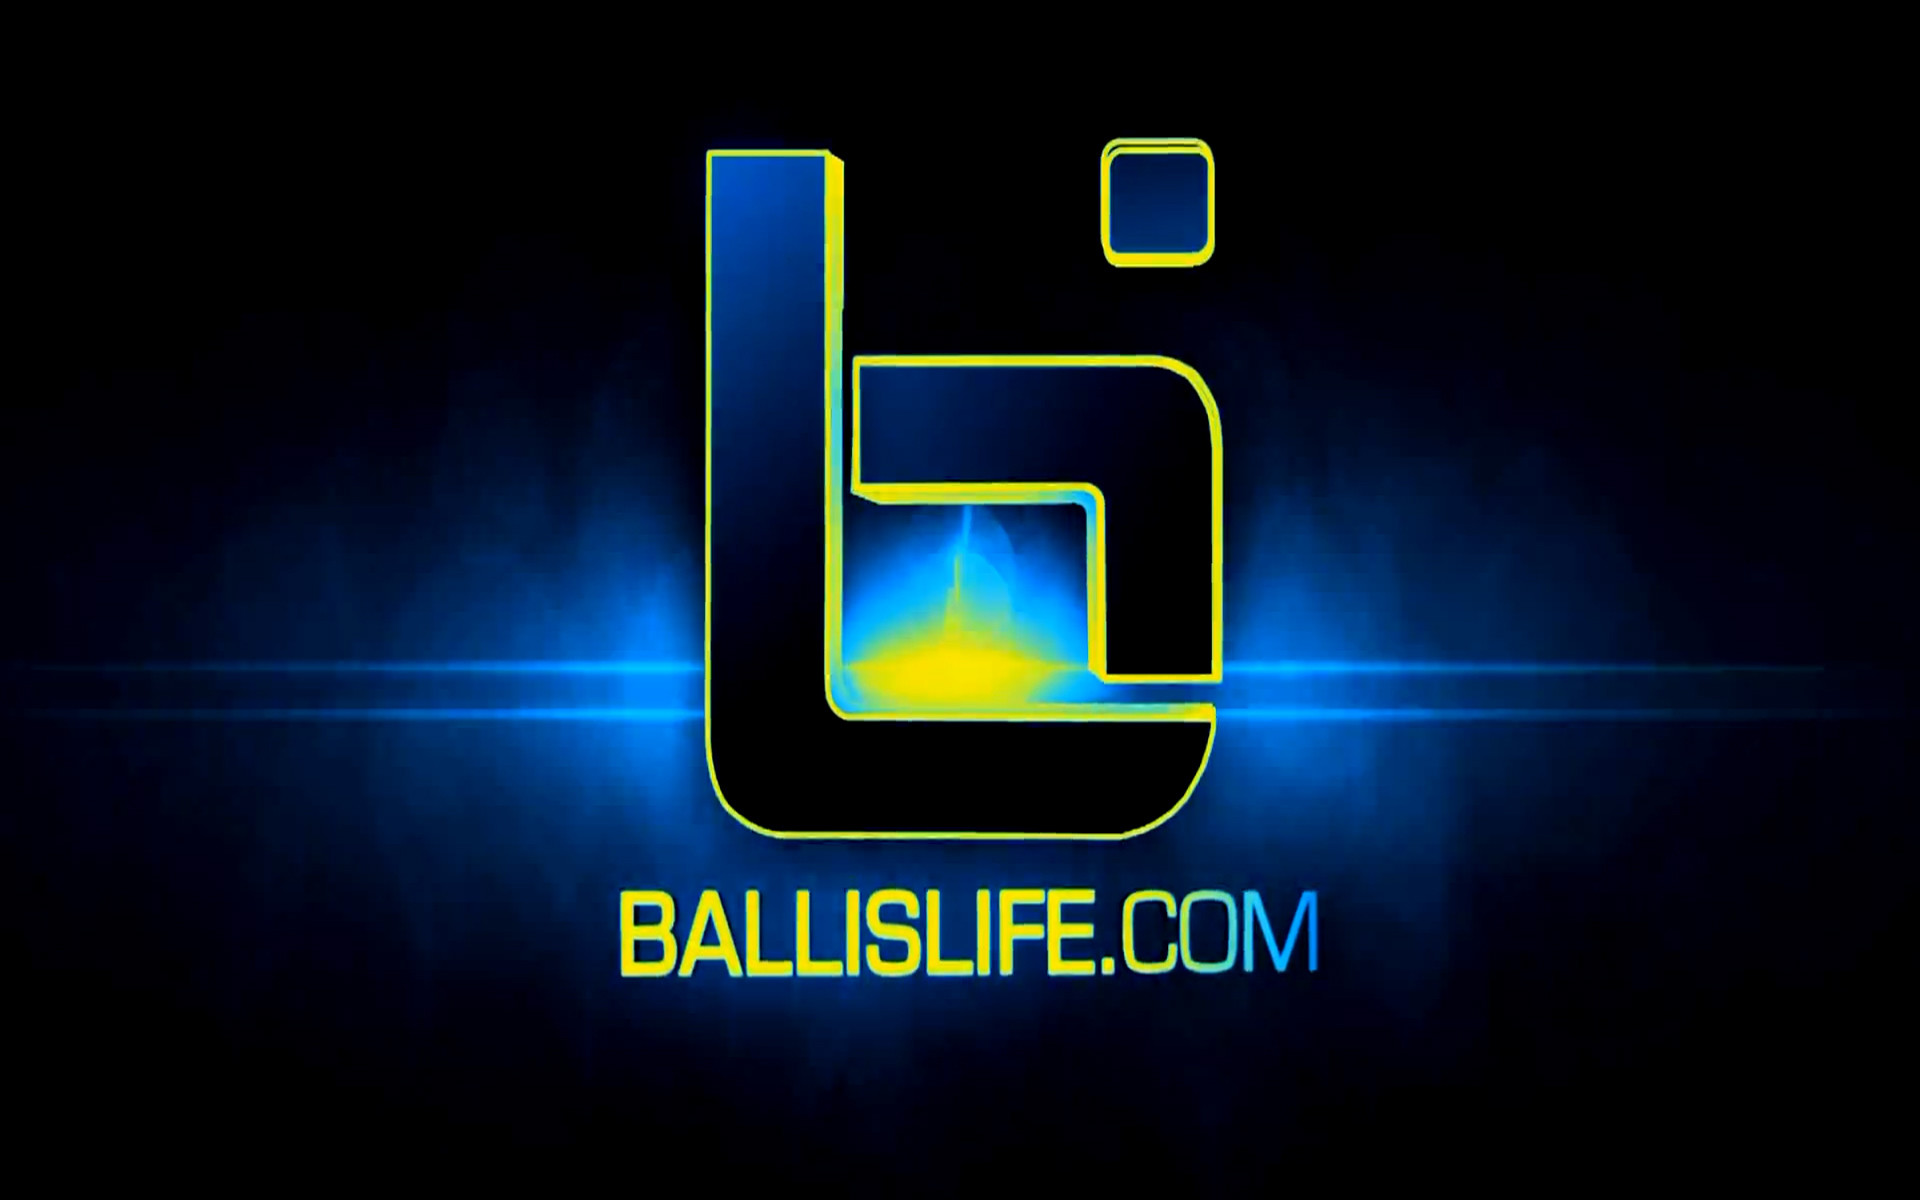 … ballislife logo wallpaper new …